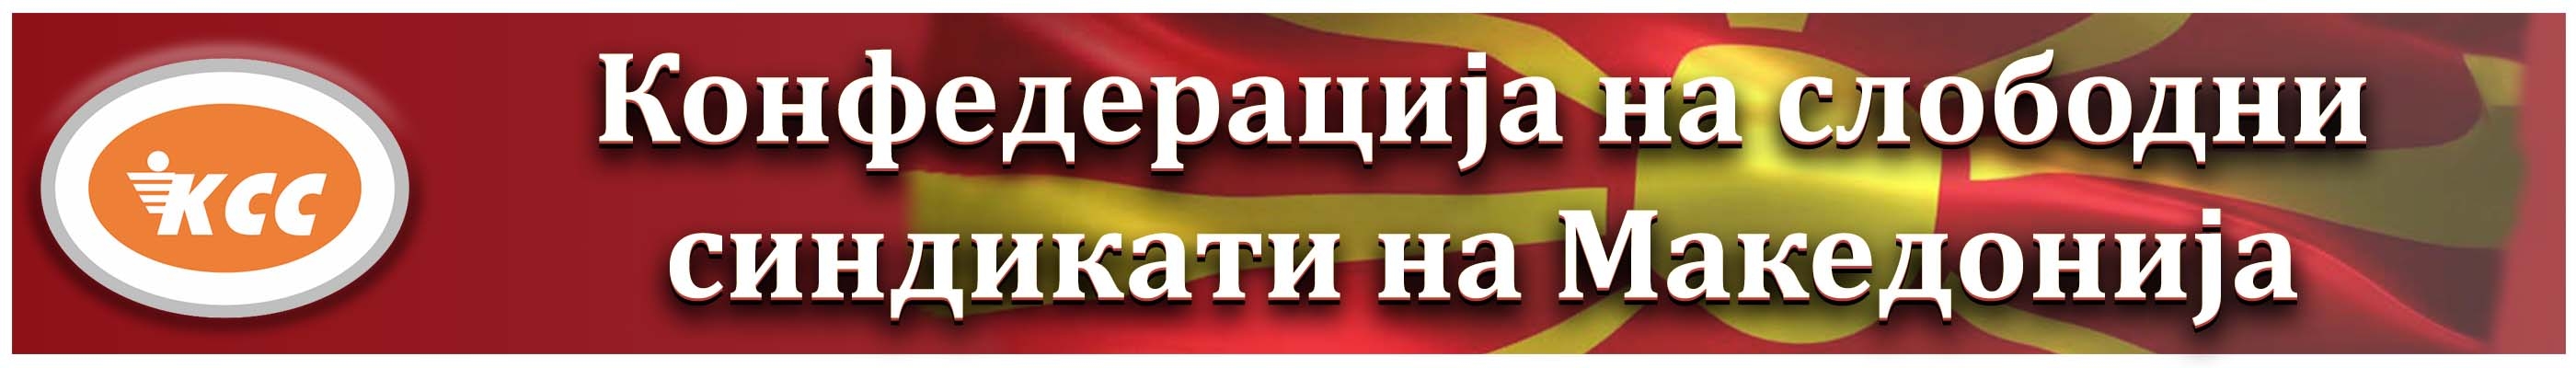 Конфедерација на слободни синдикати на Македонија